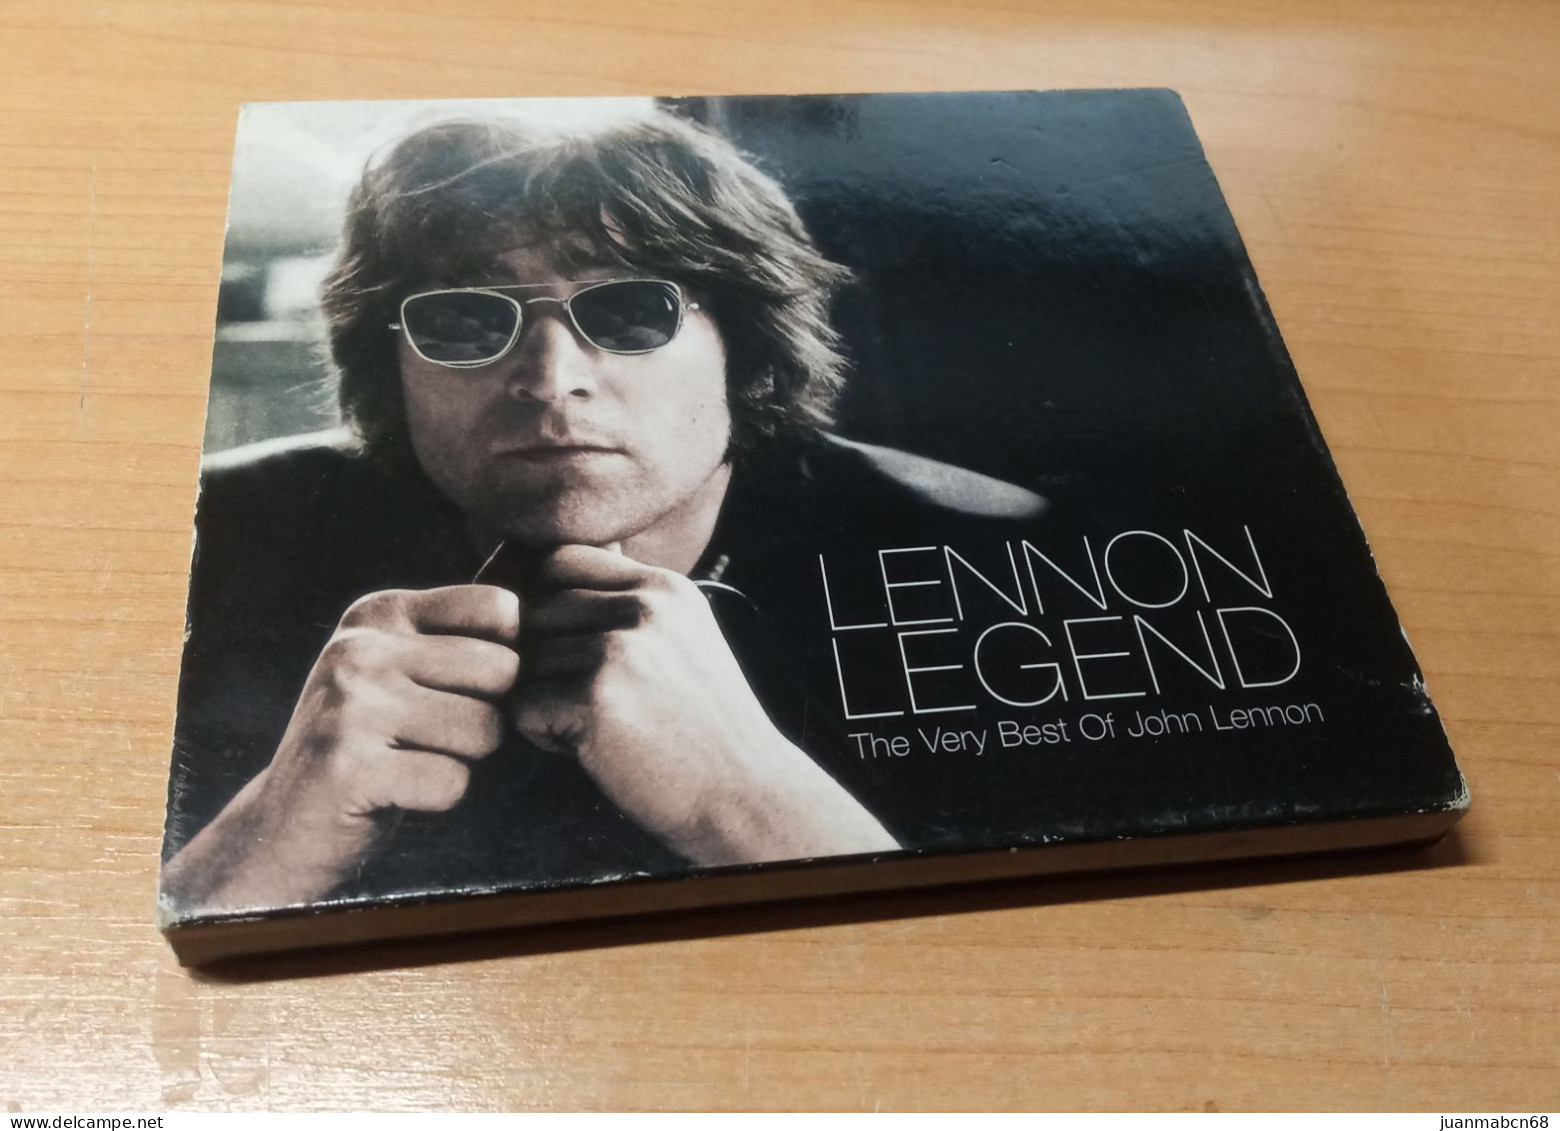 John Lennon -”legend” The Very Best Of John Lennon - Rock